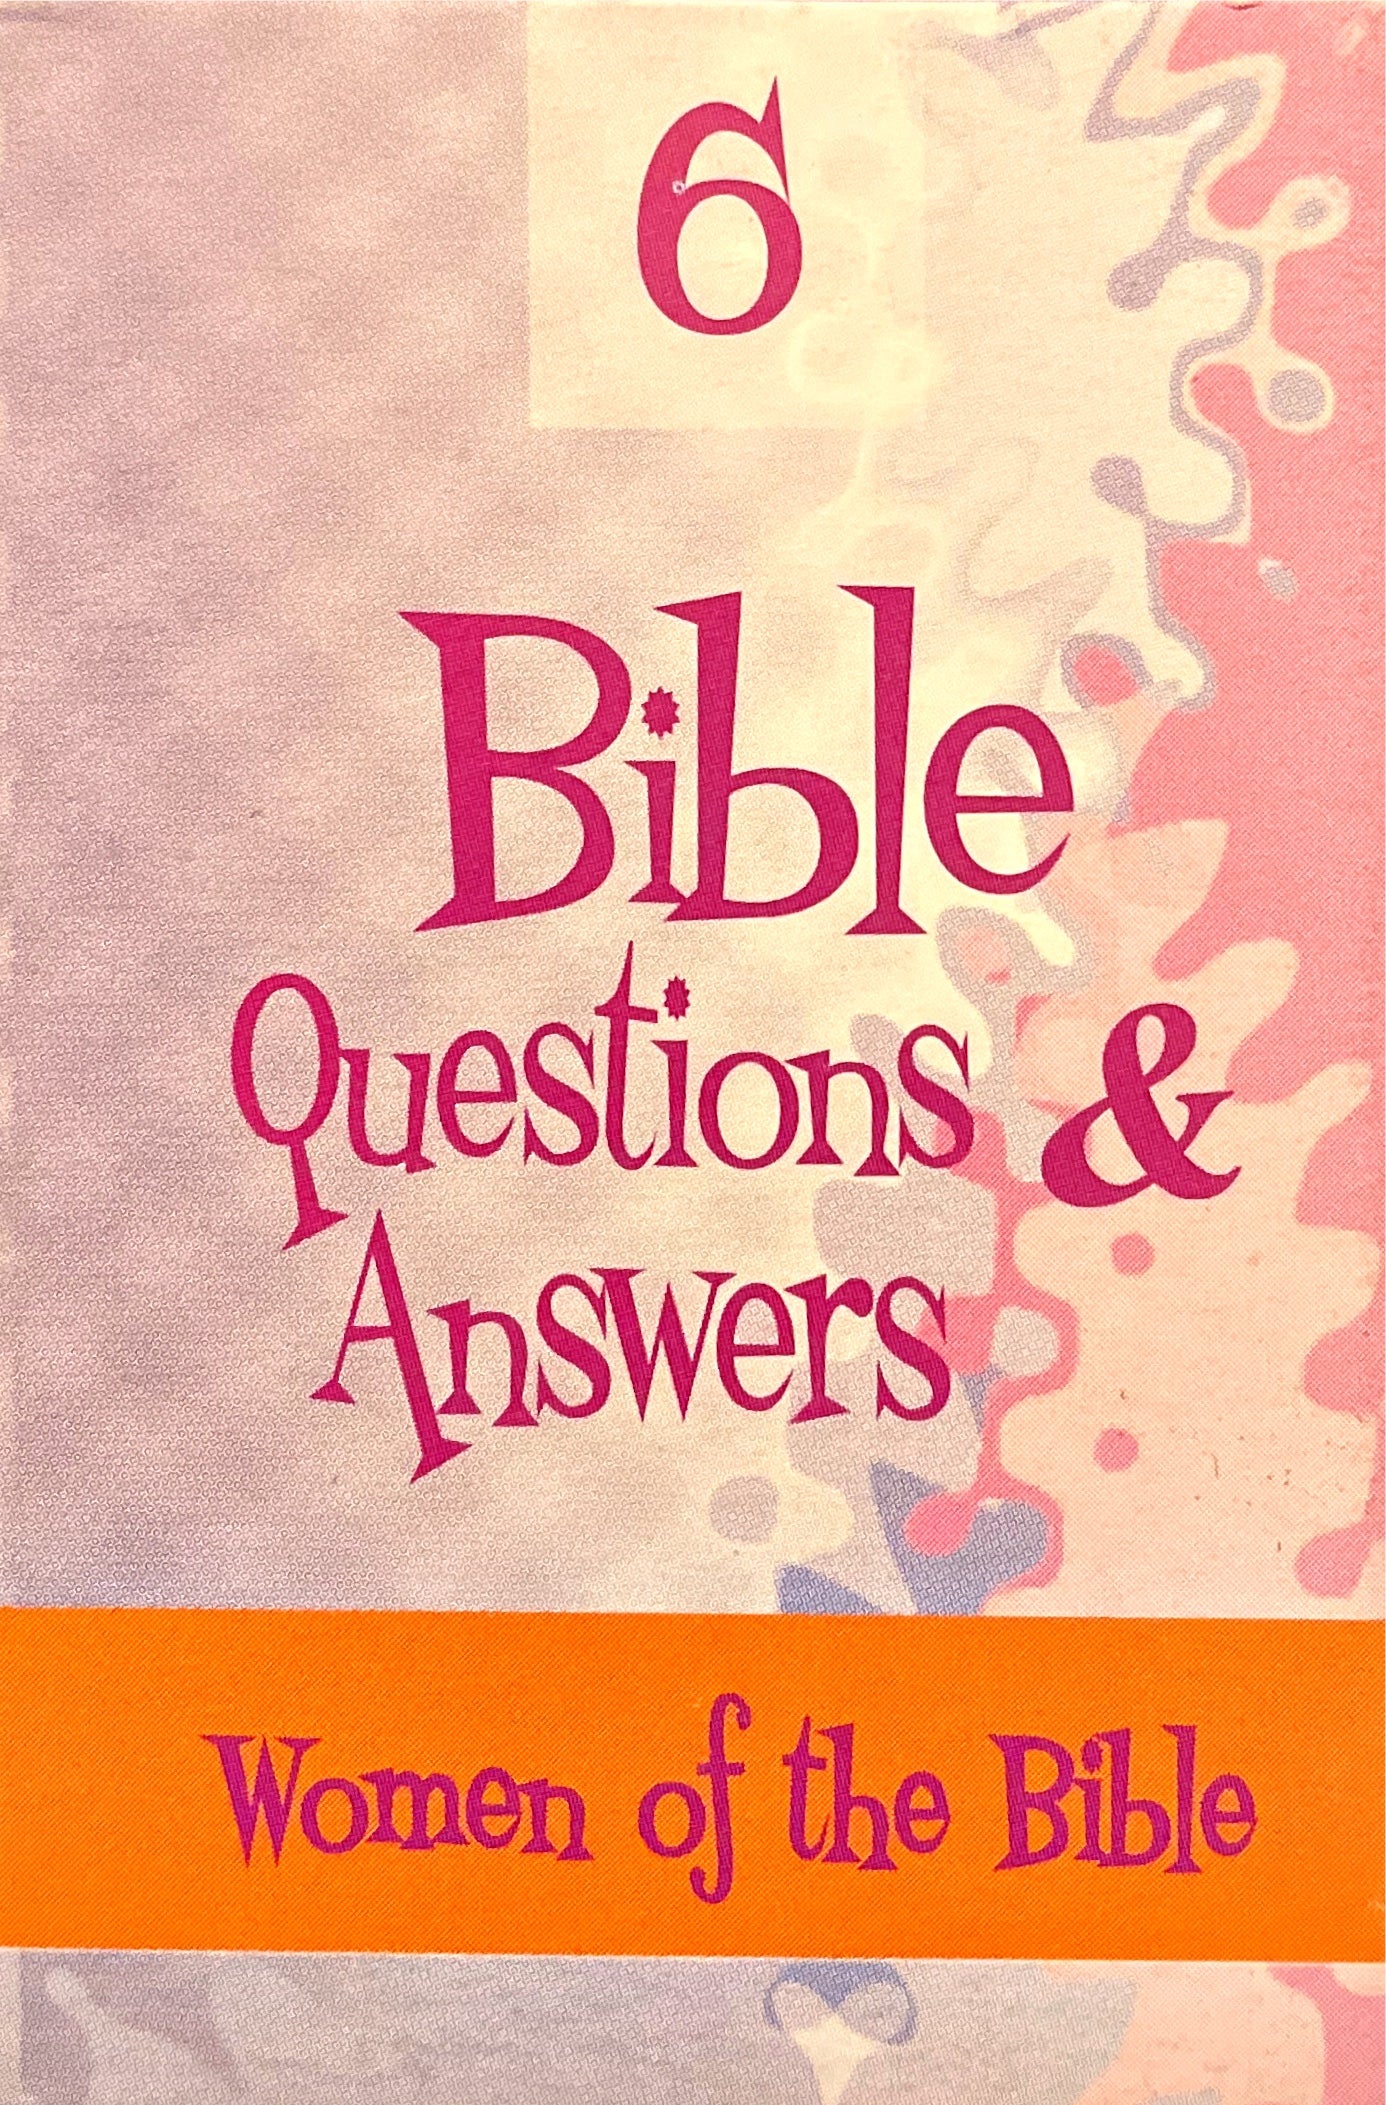 Preguntas y respuestas Bíblicas - N° 6 [Juego] Tema: Mujeres de la Biblia